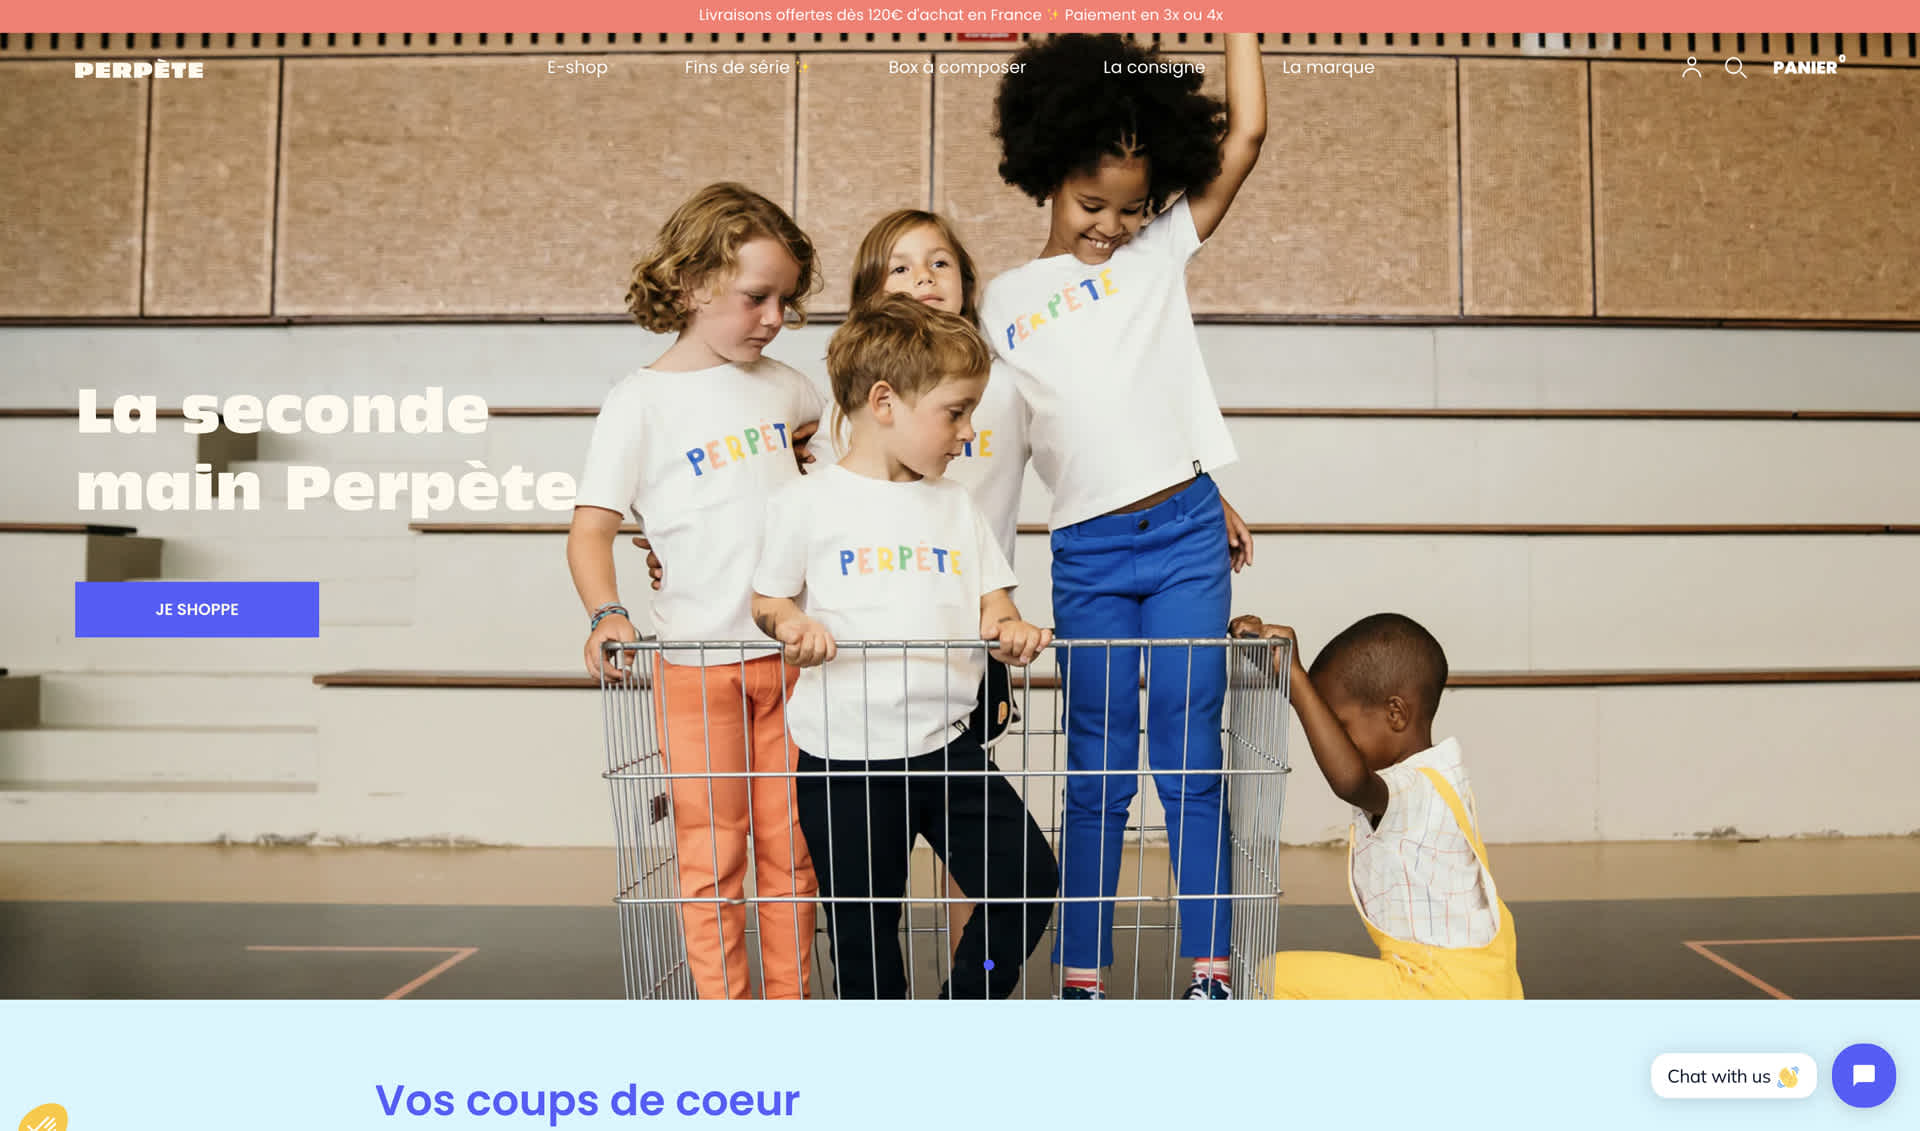 Perpète - Homepage